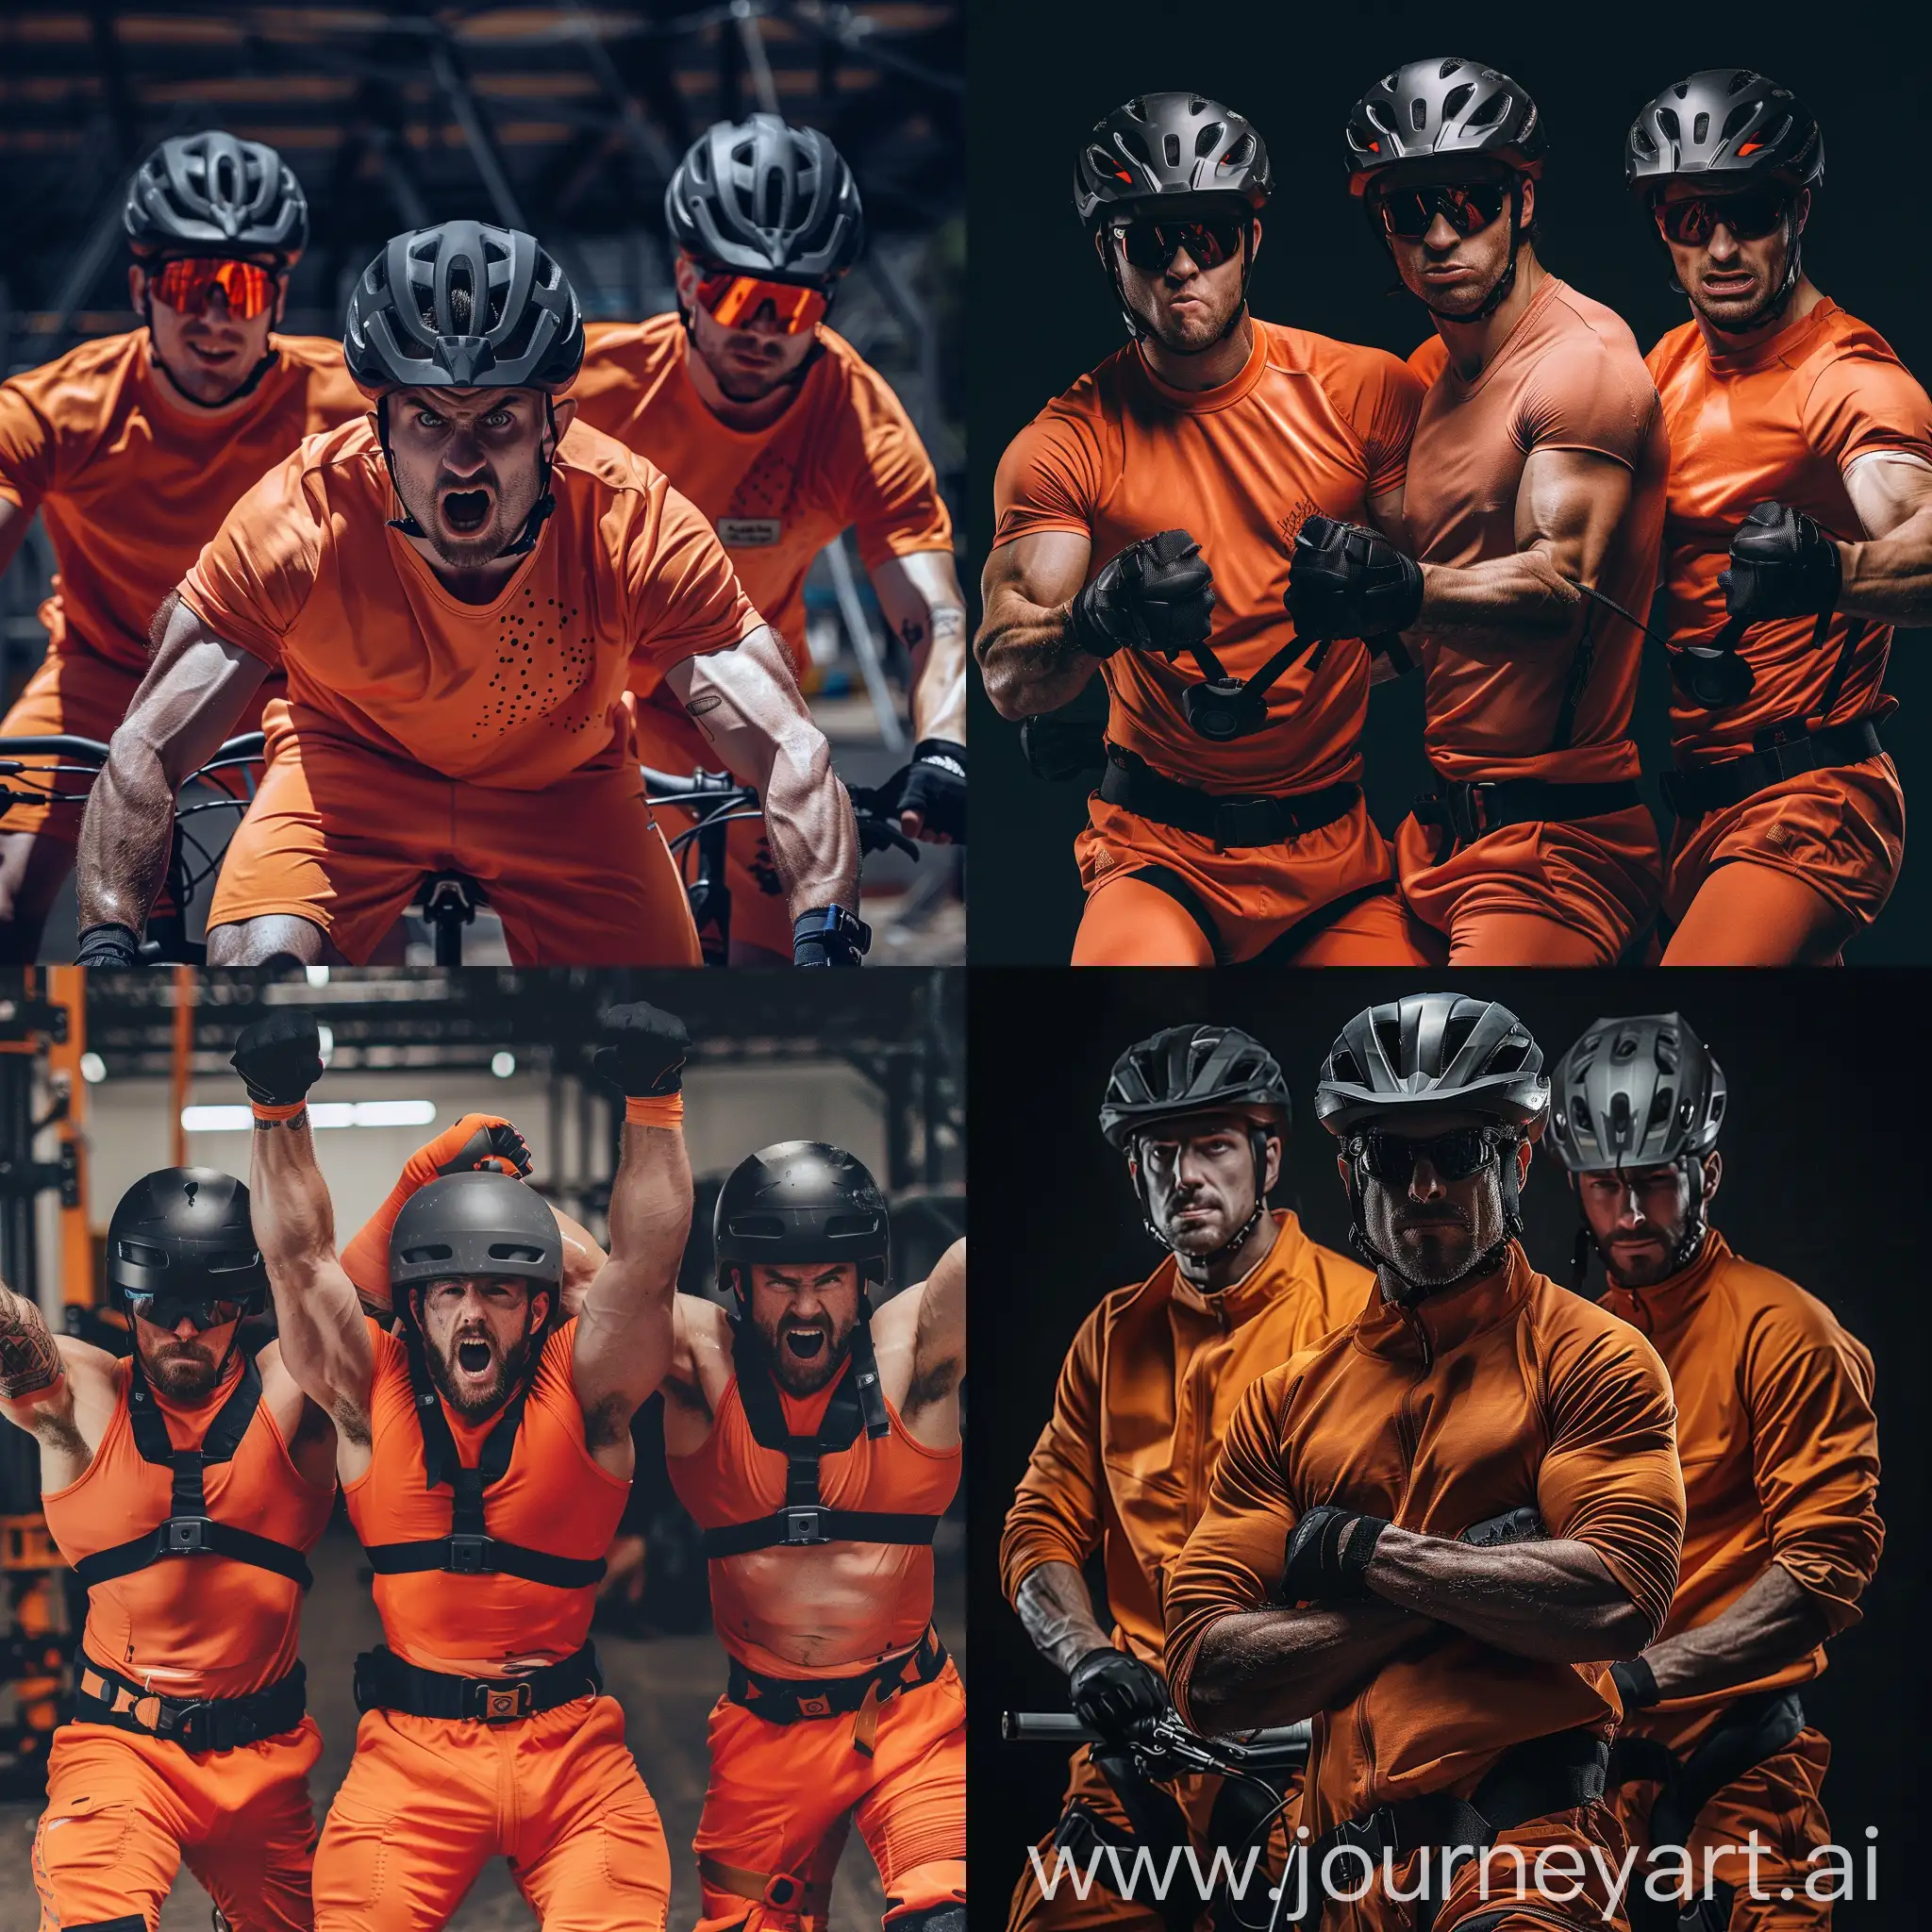 3 накаченных мужчины в оранжевой одежде и черных шлемах